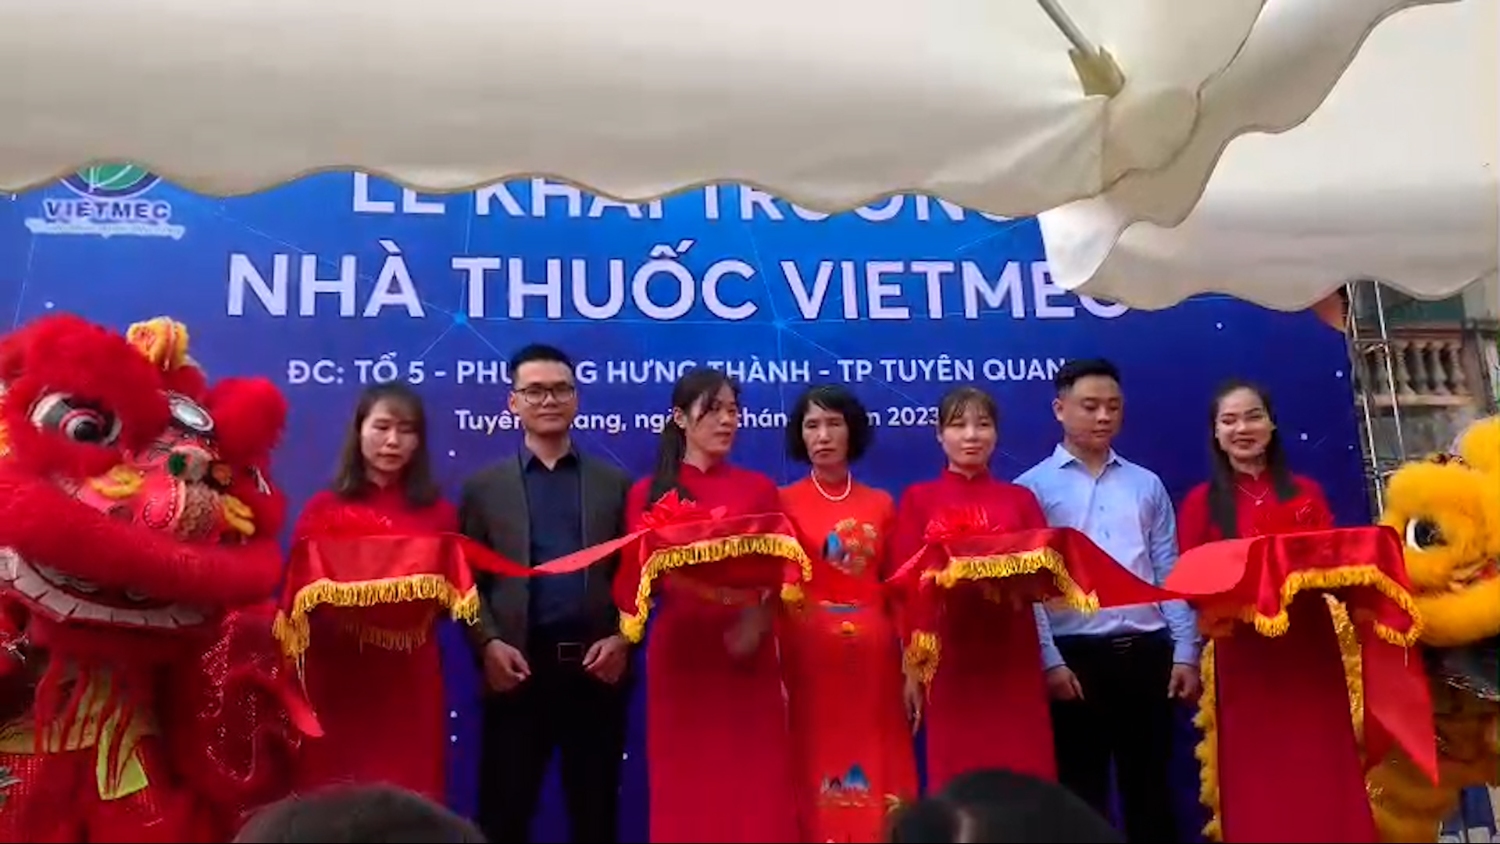 Khai trương nhà thuốc VIETMEC Pharmacy Tuyên Quang